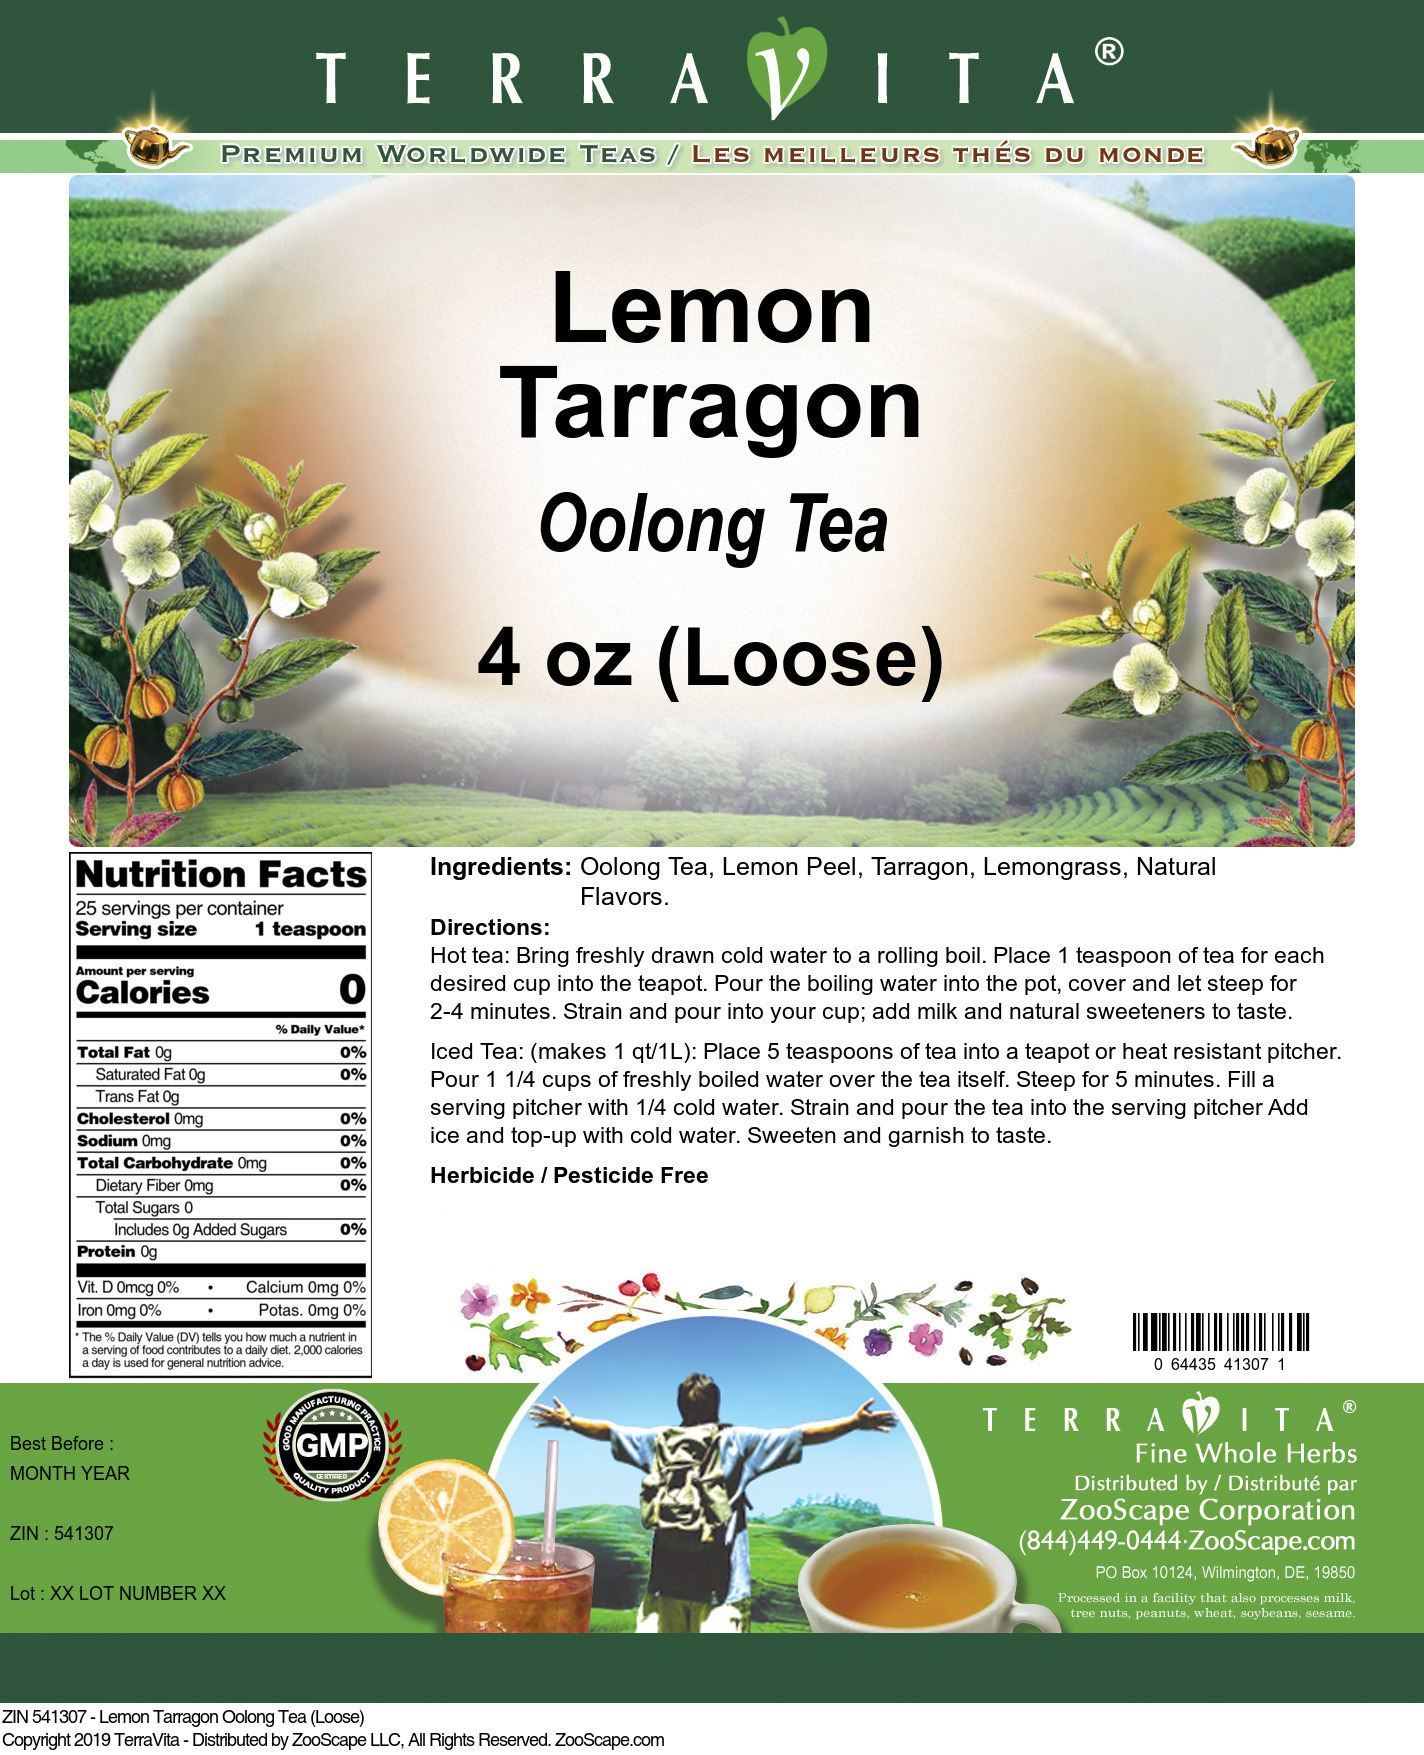 Lemon Tarragon Oolong Tea (Loose) - Label